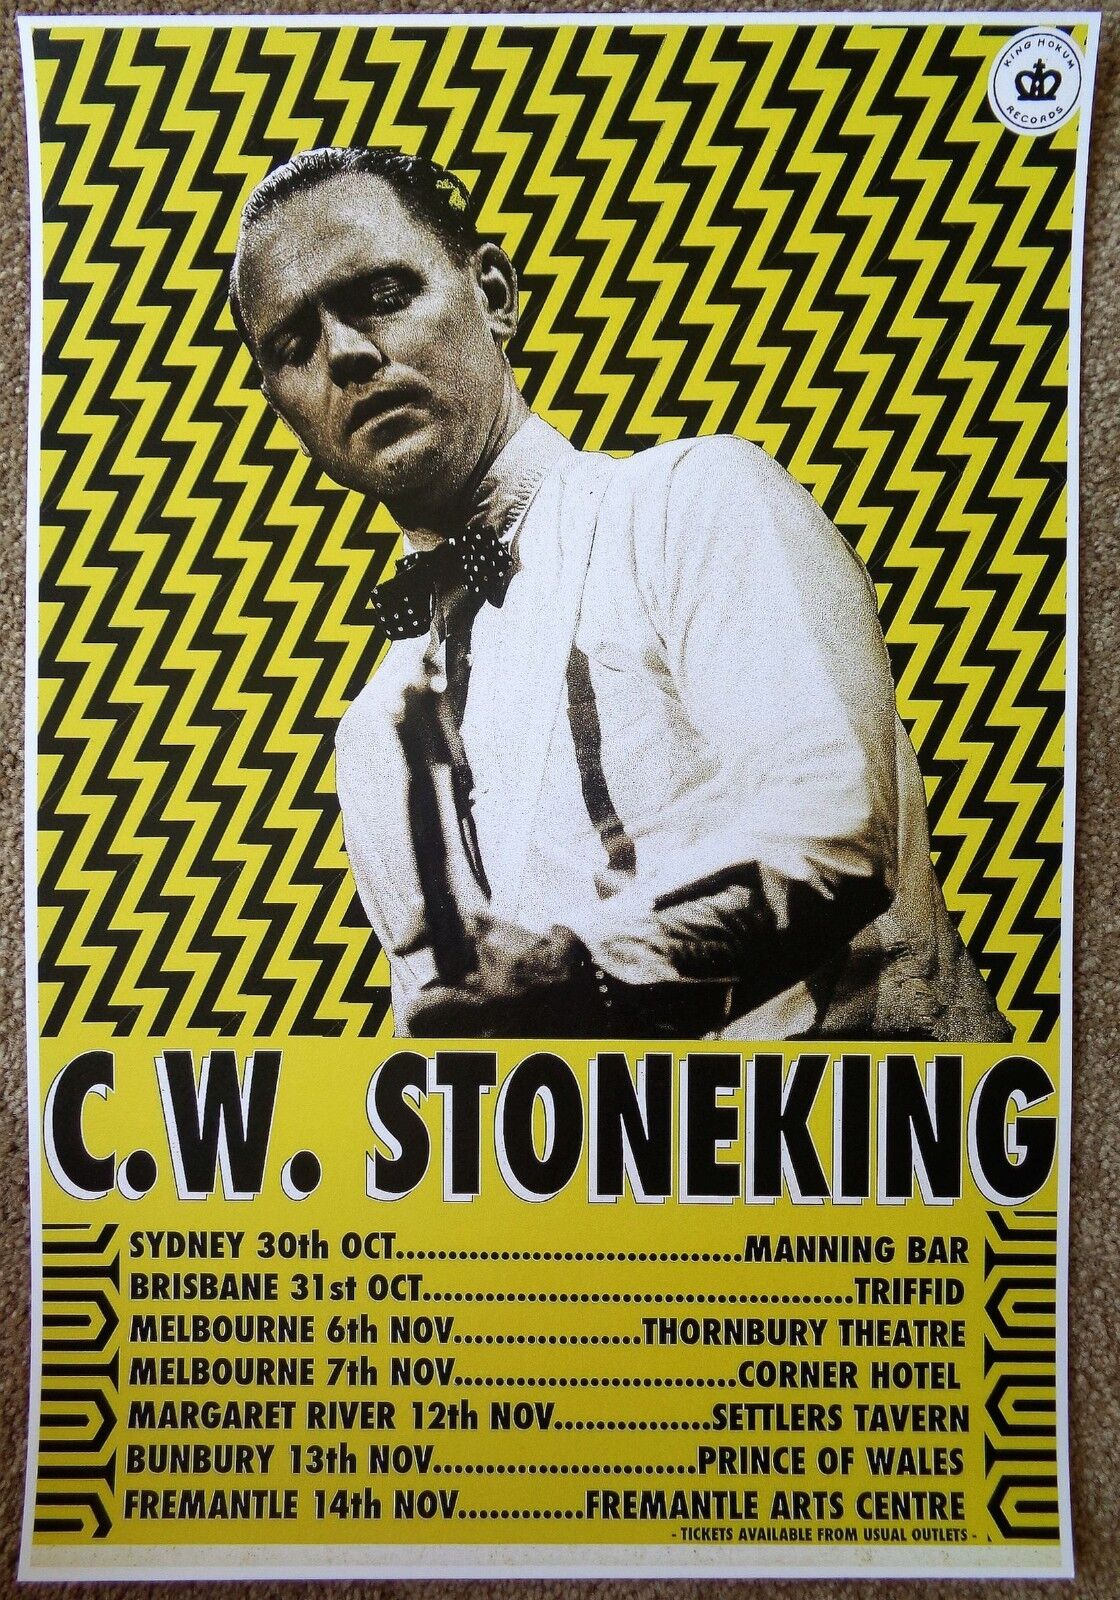 C.W. STONEKING 2015 Tour POSTER Australia Gig Concert